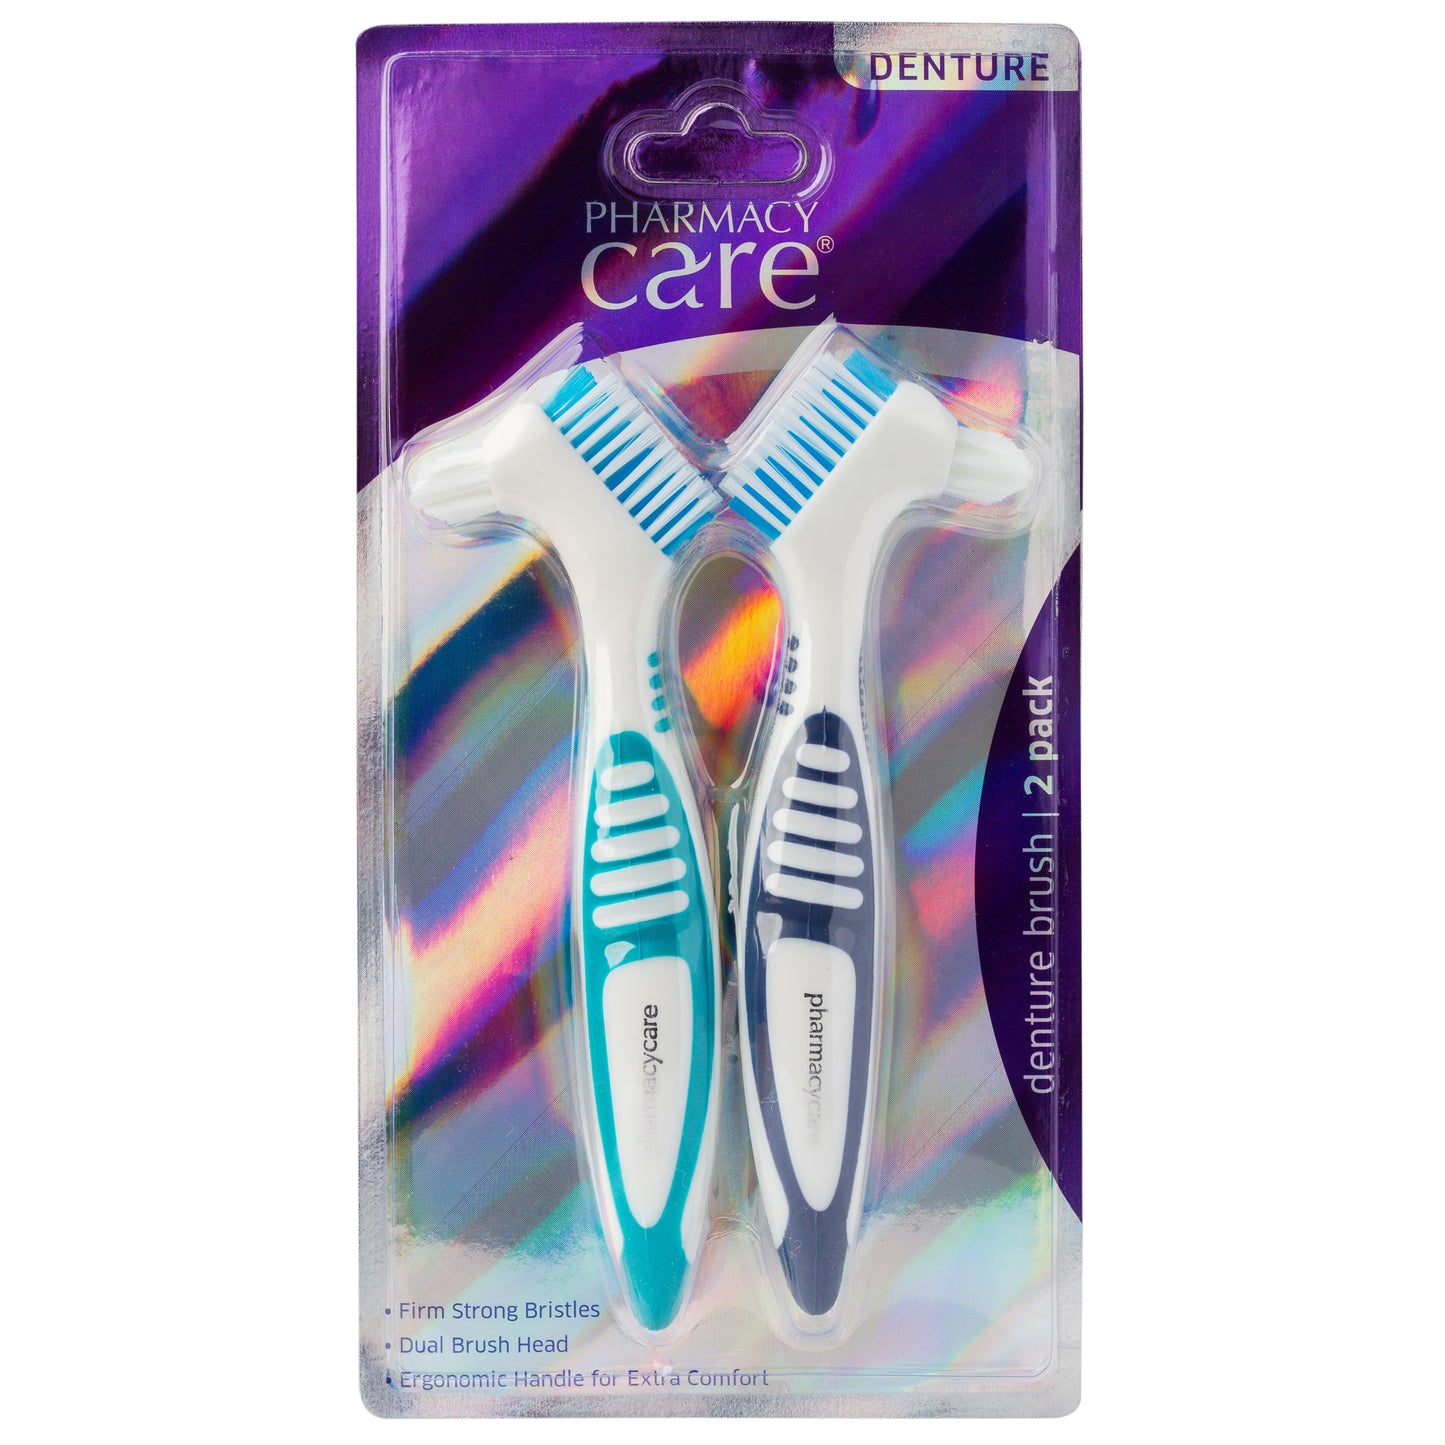 Pharmacy Care Denture Brush 2 Pack